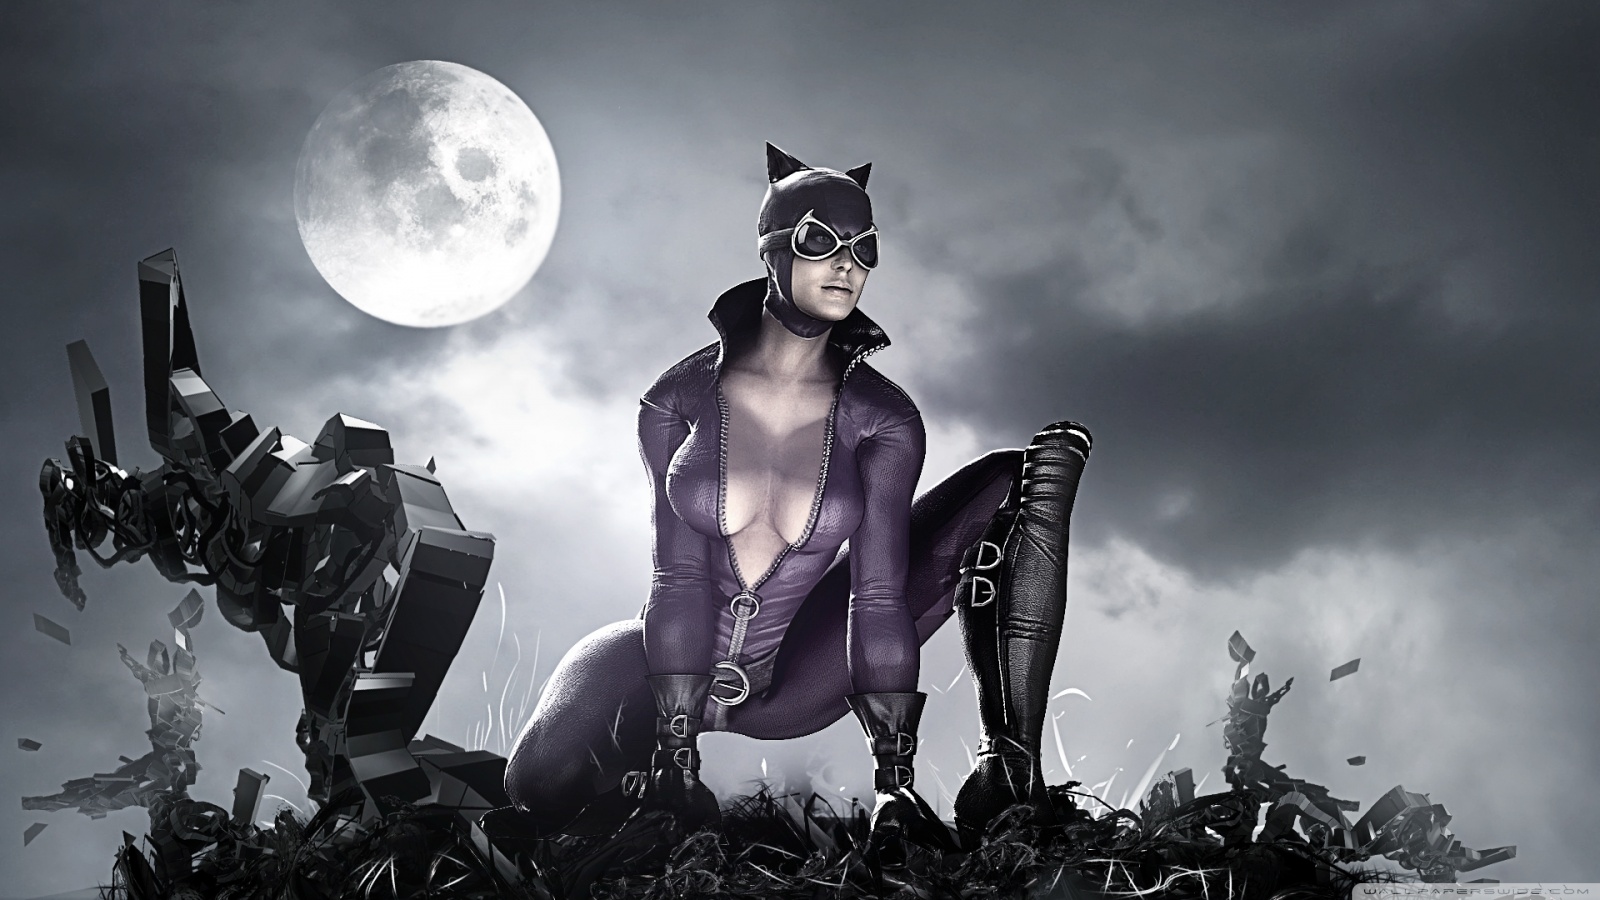 catwoman fond d'écran hd,homme chauve souris,personnage fictif,illustration,noir et blanc,compositing numérique